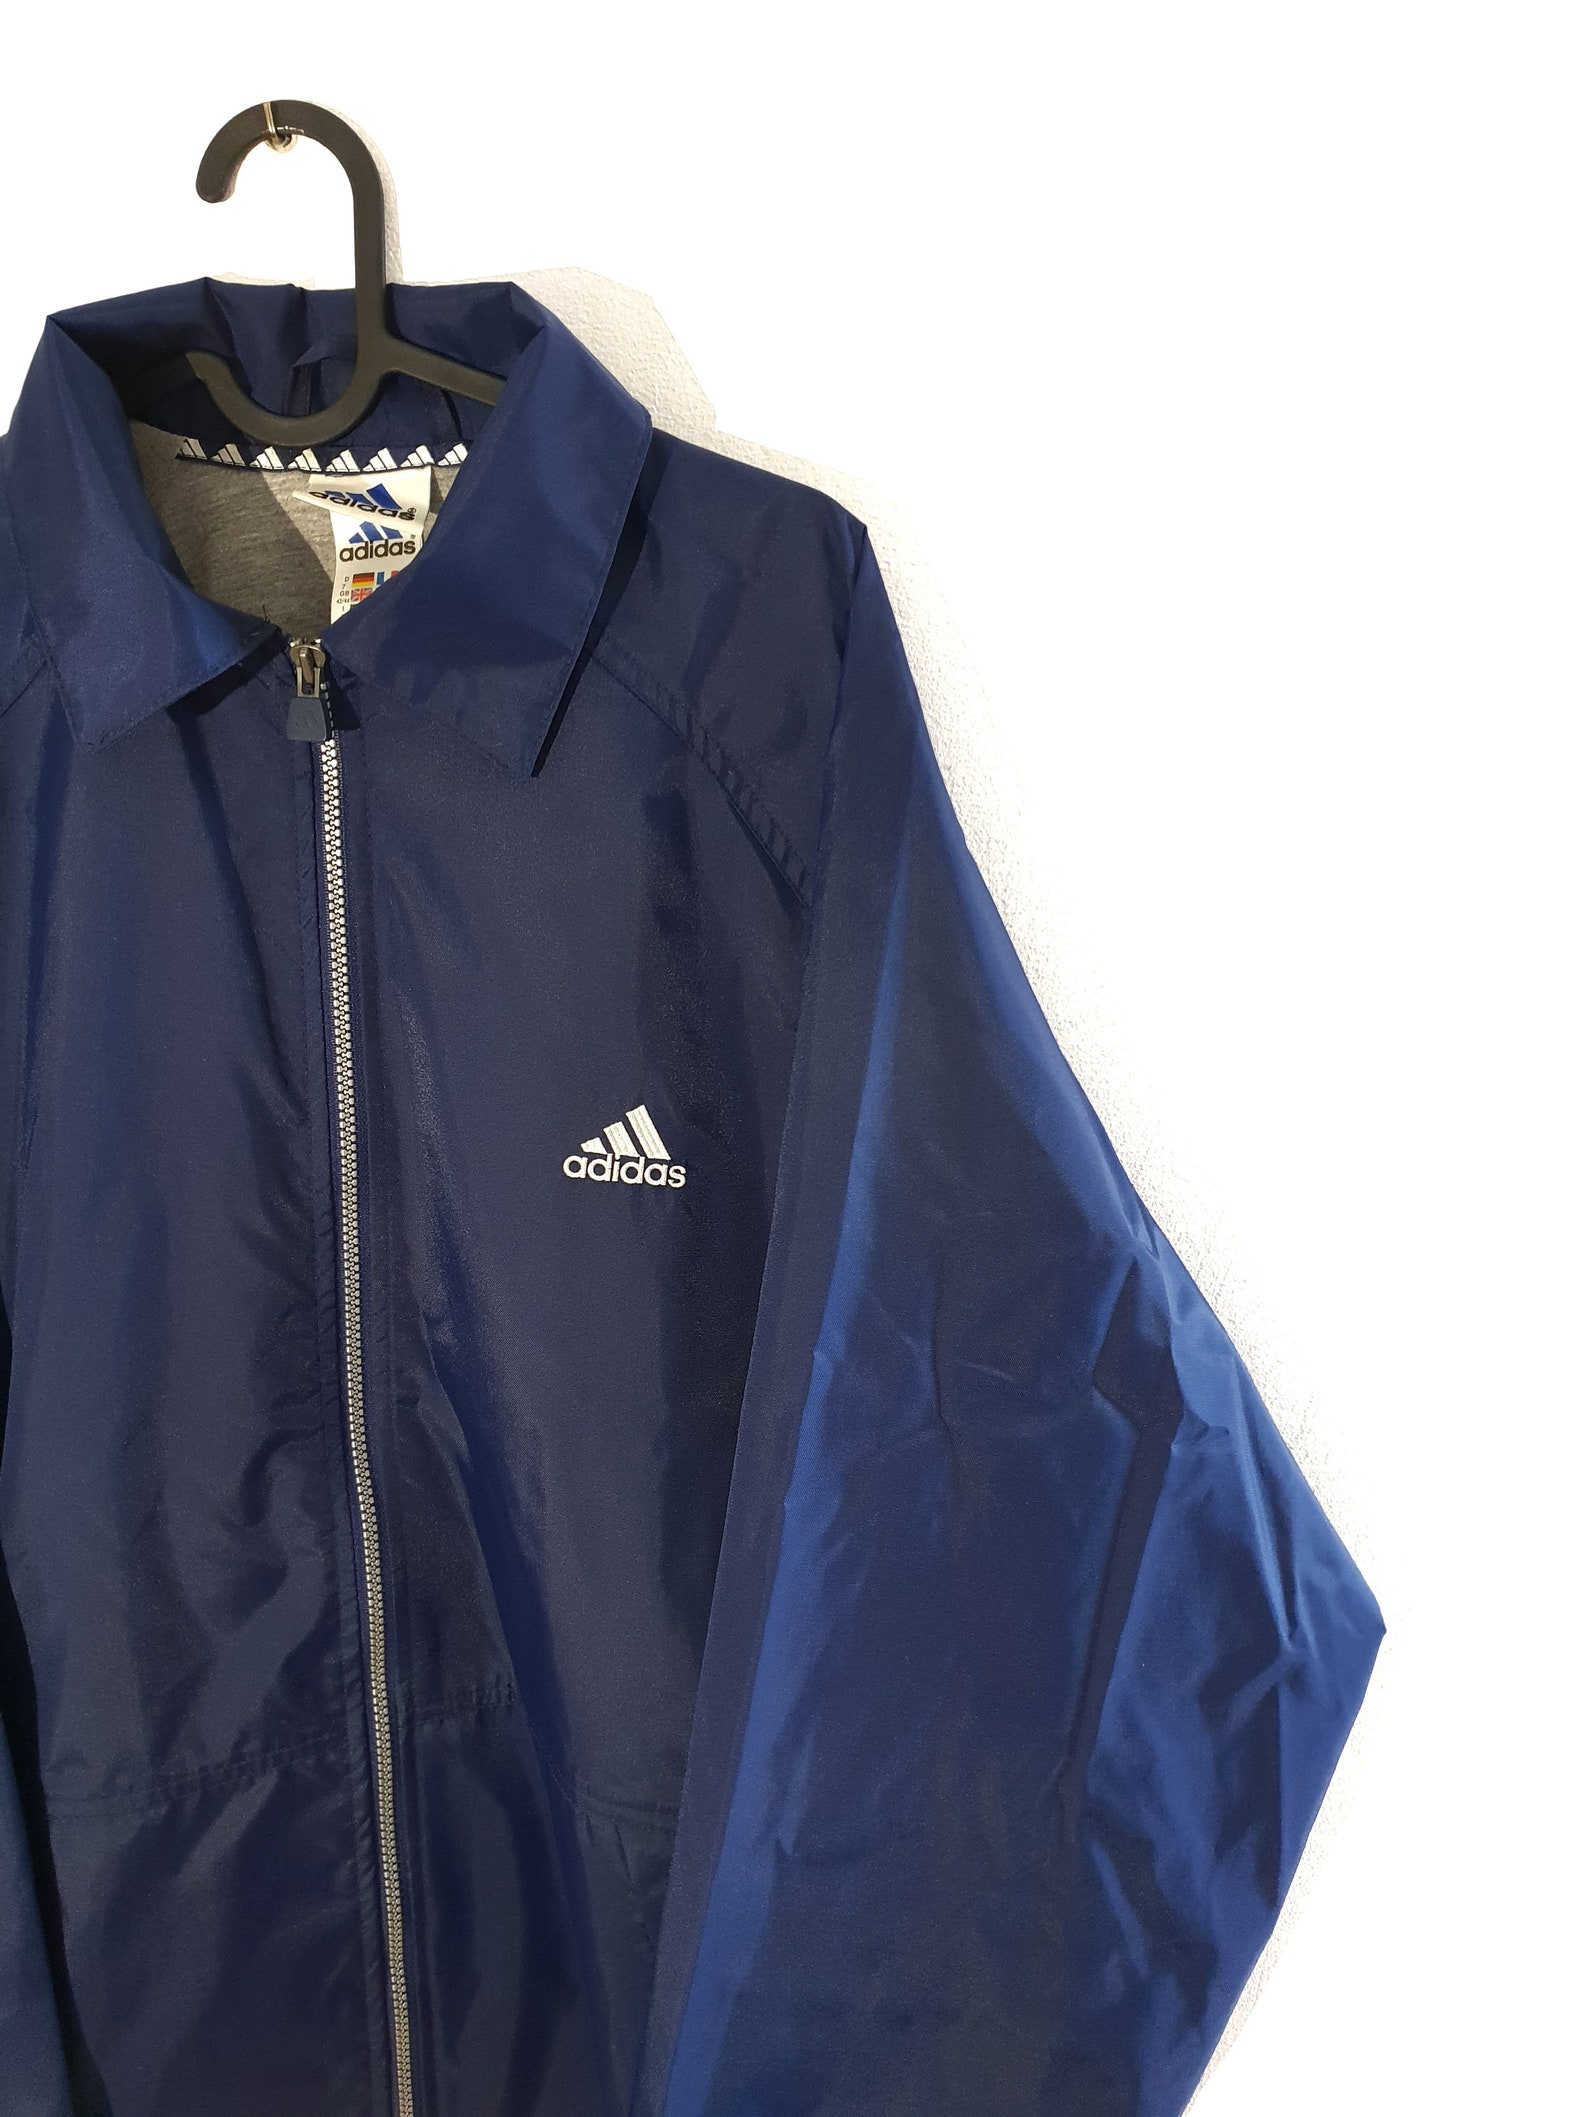 90s Adidas Vintage Jacket Blue White / Size XL Unisex | Etsy